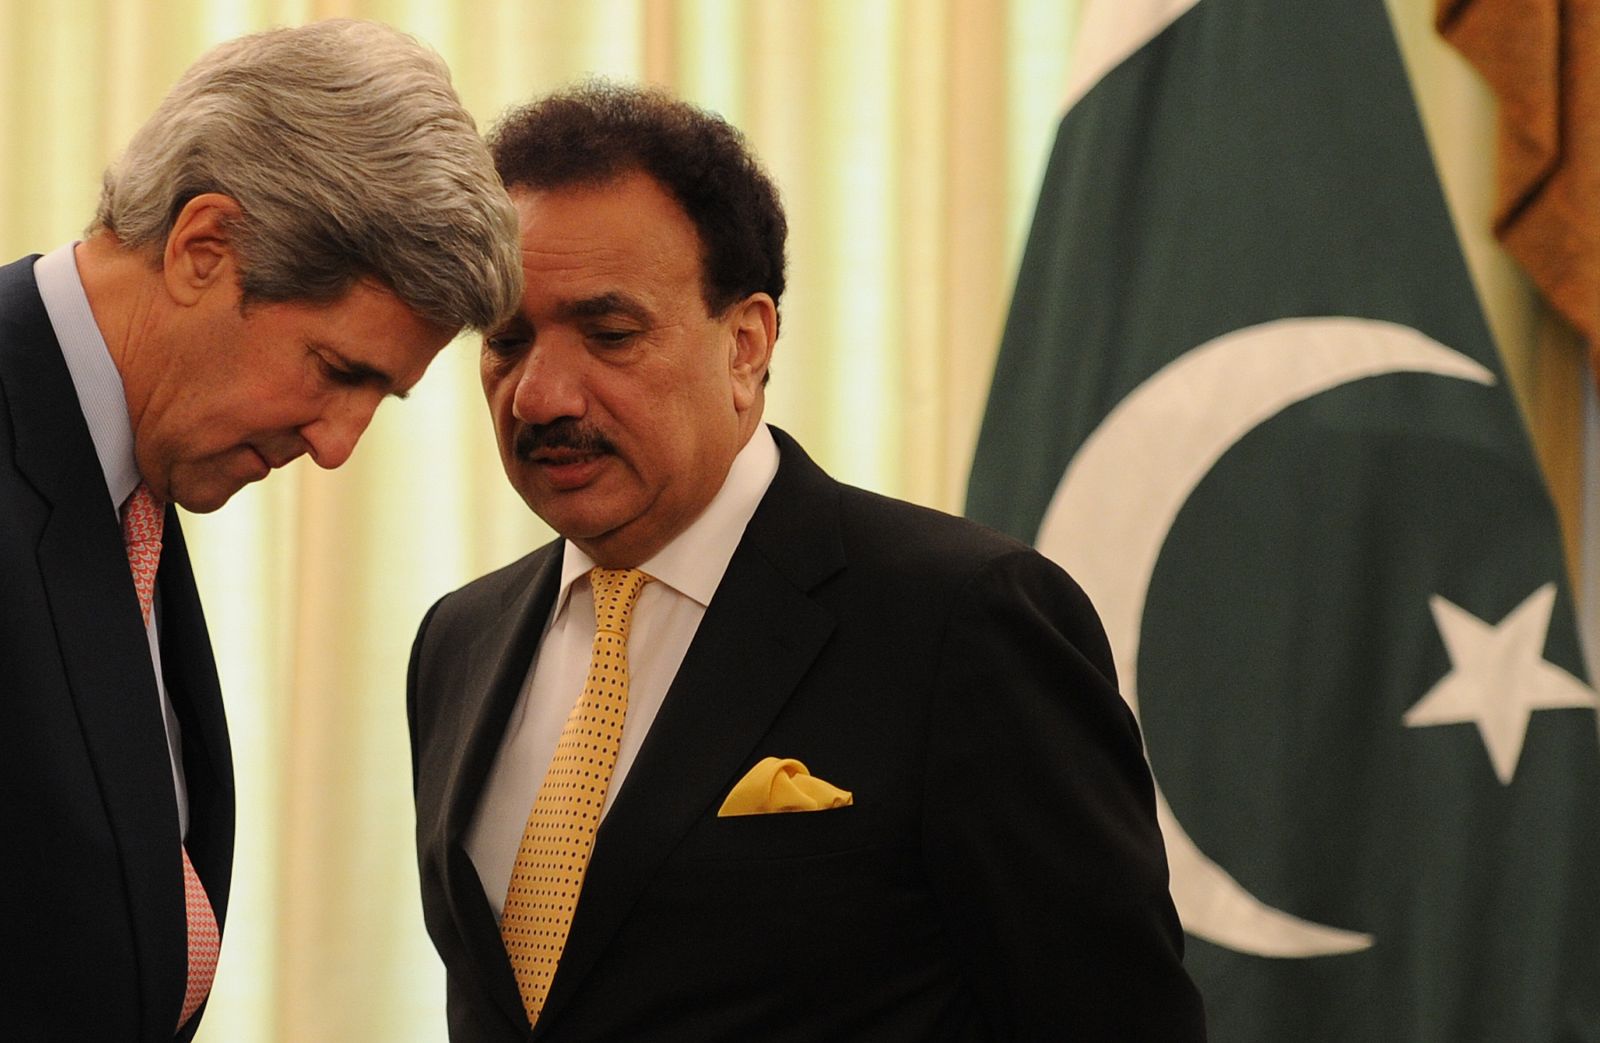 El senador estadounidense, John Kerry, con el ministro paquistaní, Rehman Malik